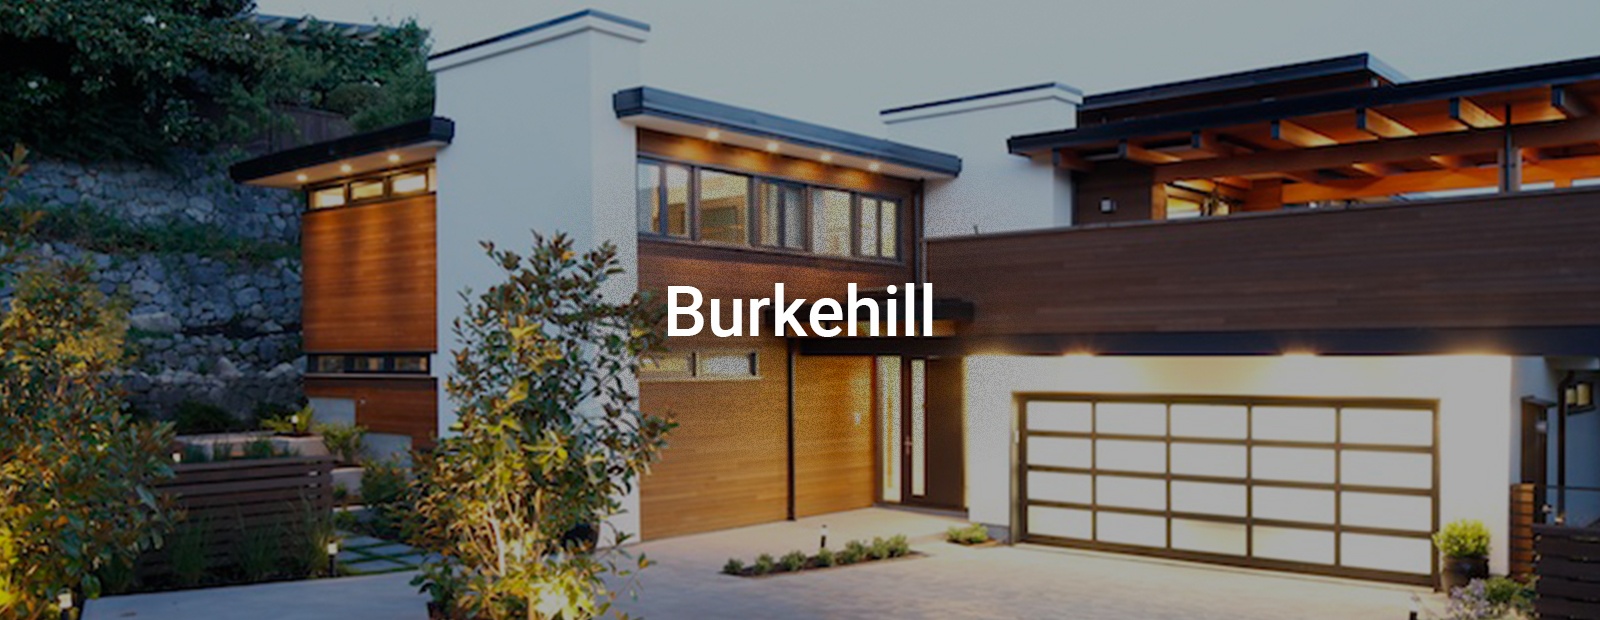 Burkehill - Interior Design Company Vancouver